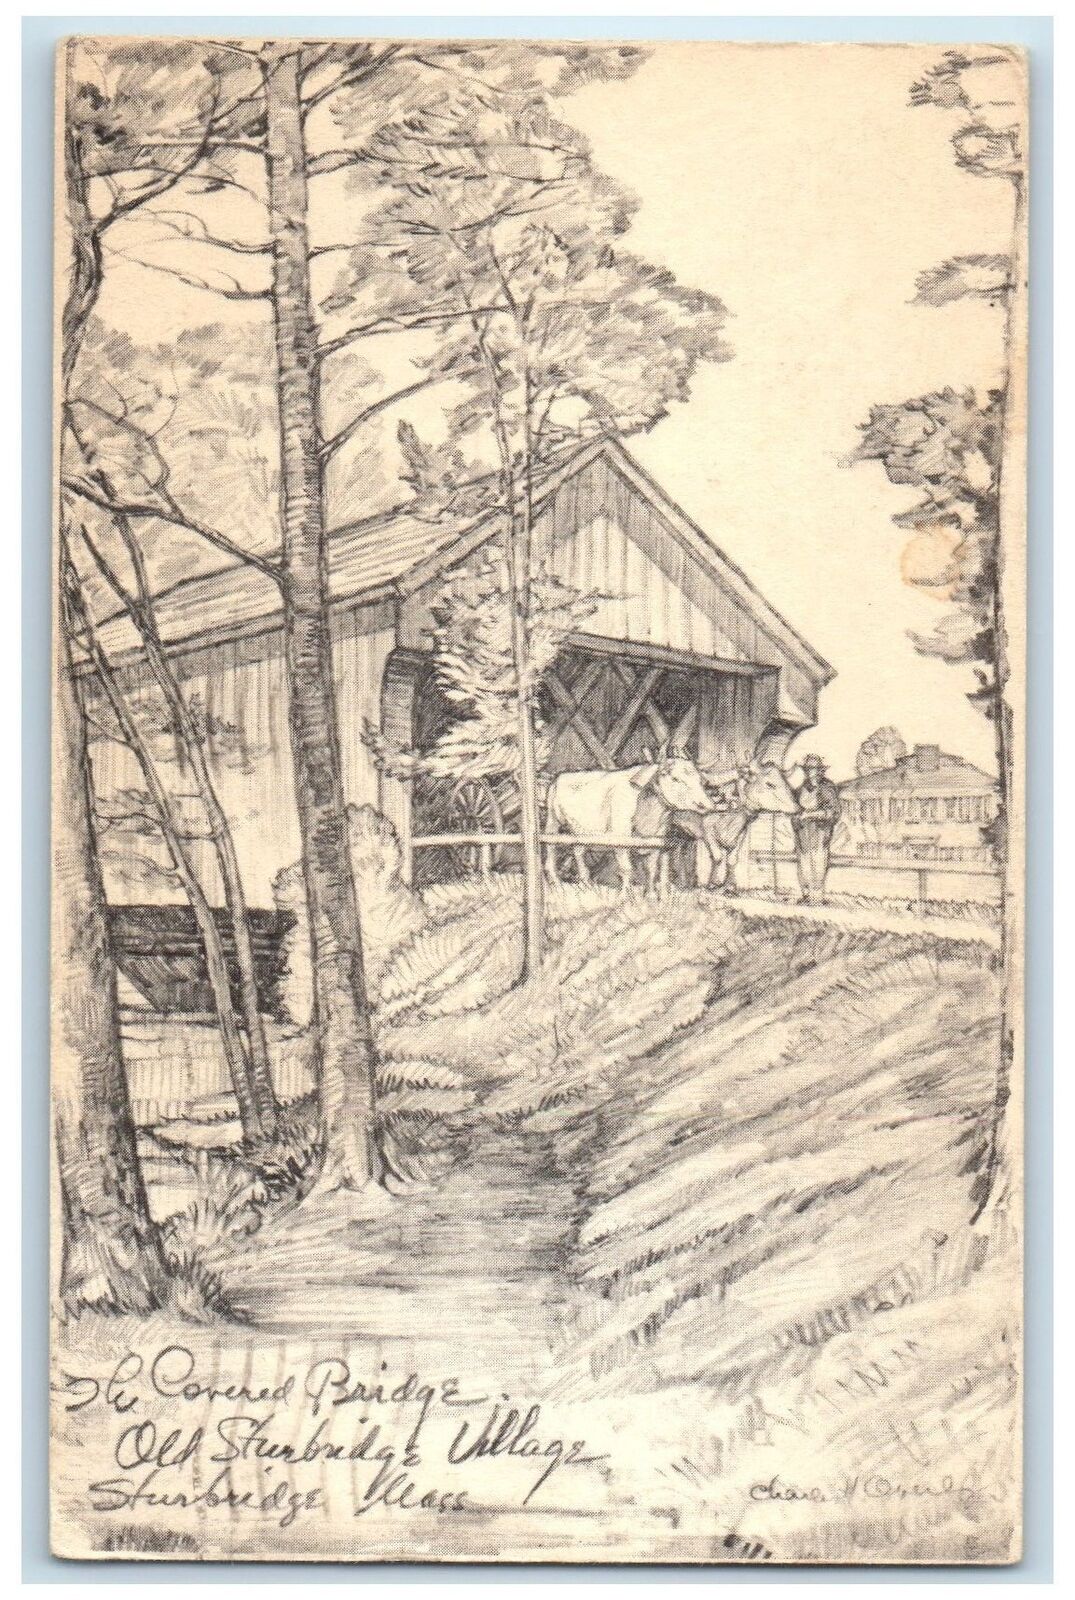 1964 Covered Bridge Old Sturbridge Artist Work Dummerston Vermont VT Postcard